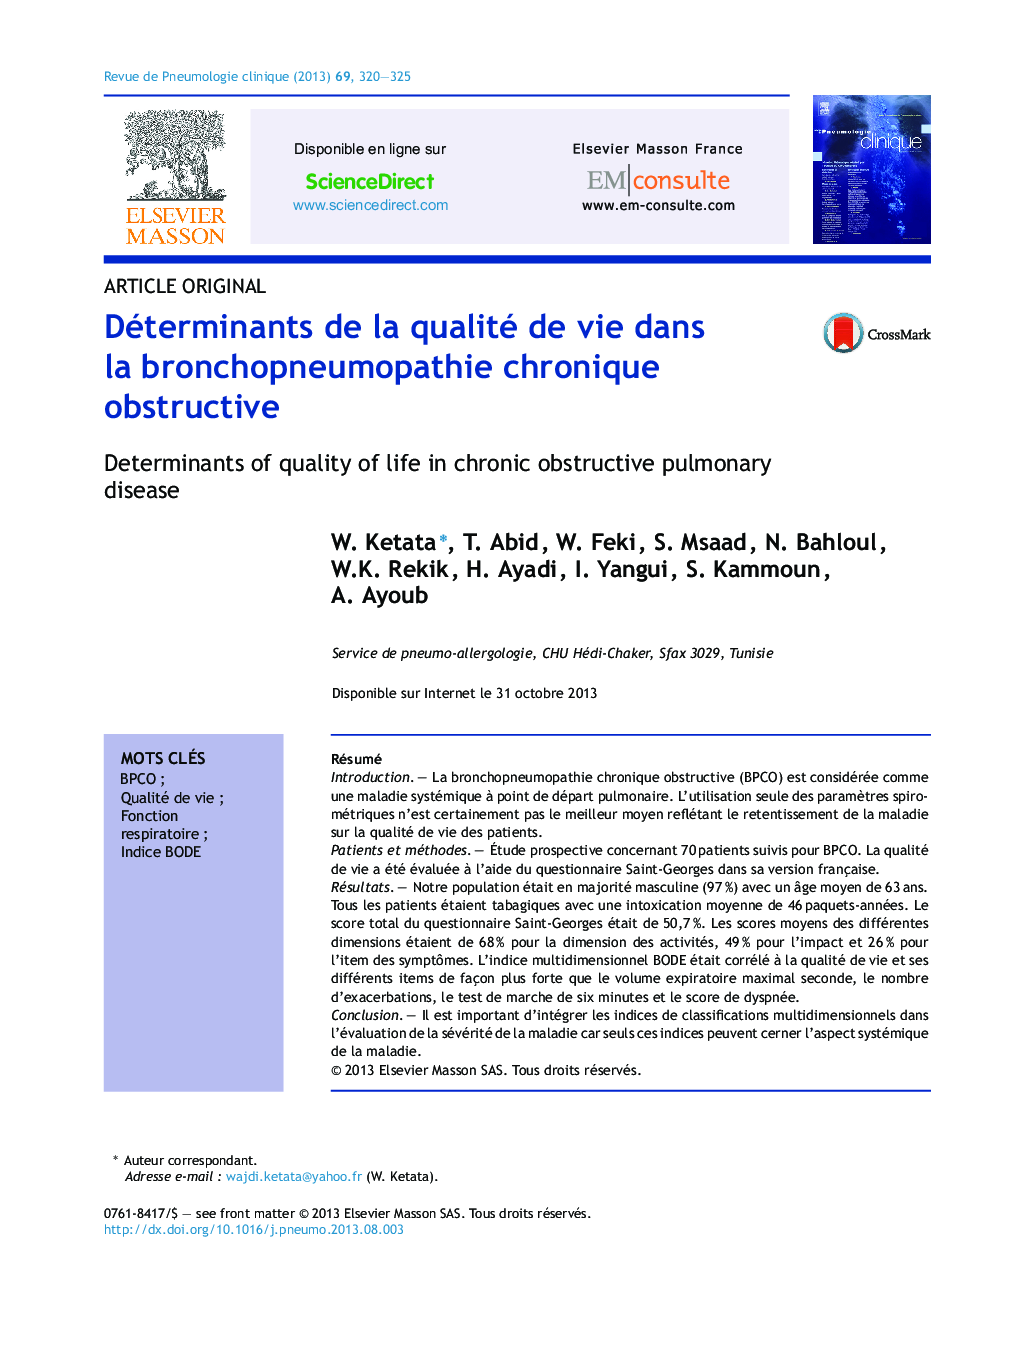 Déterminants de la qualité de vie dans la bronchopneumopathie chronique obstructive